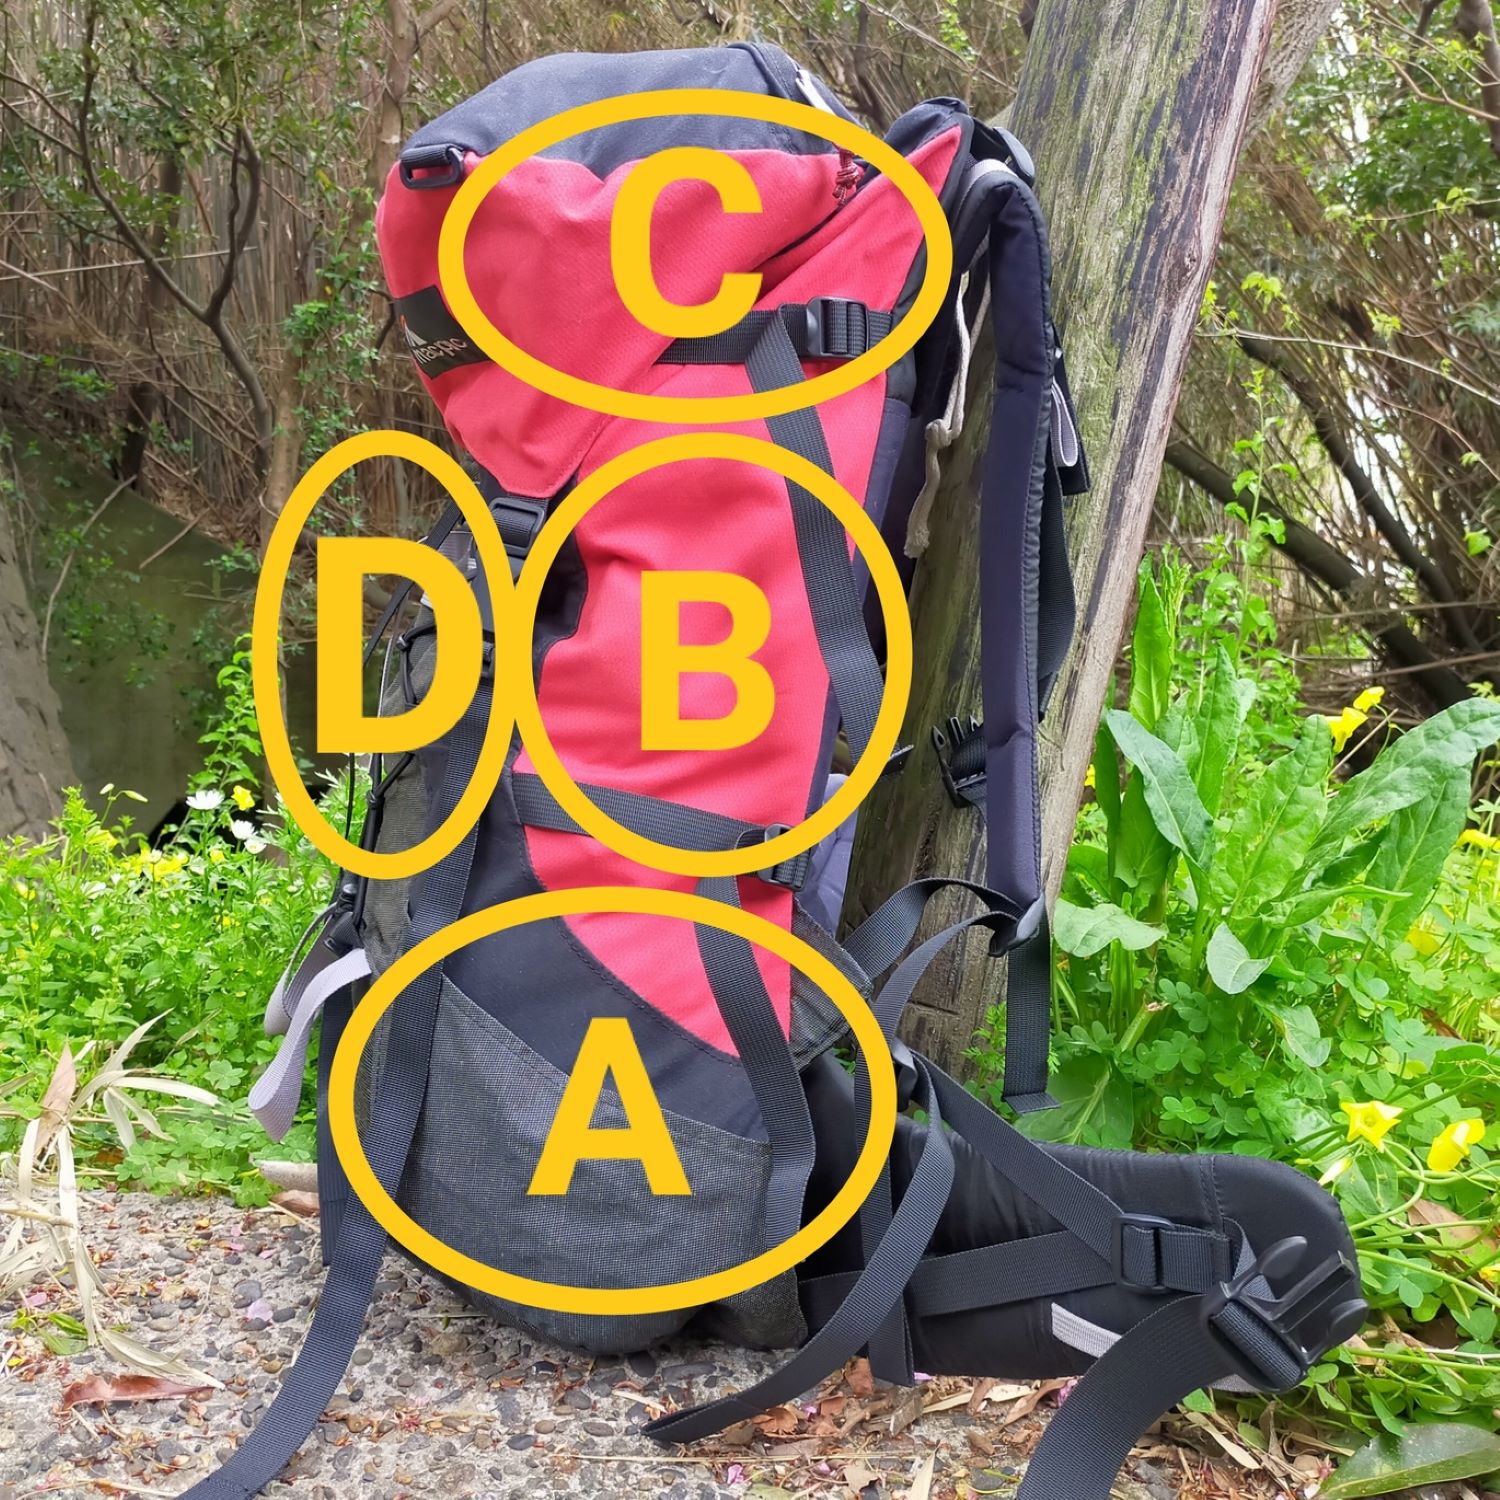 荷物をパッキングしたカバンの写真に、パッキングした荷物の位置がわかるように、A、B、C、D、と書き込んである。